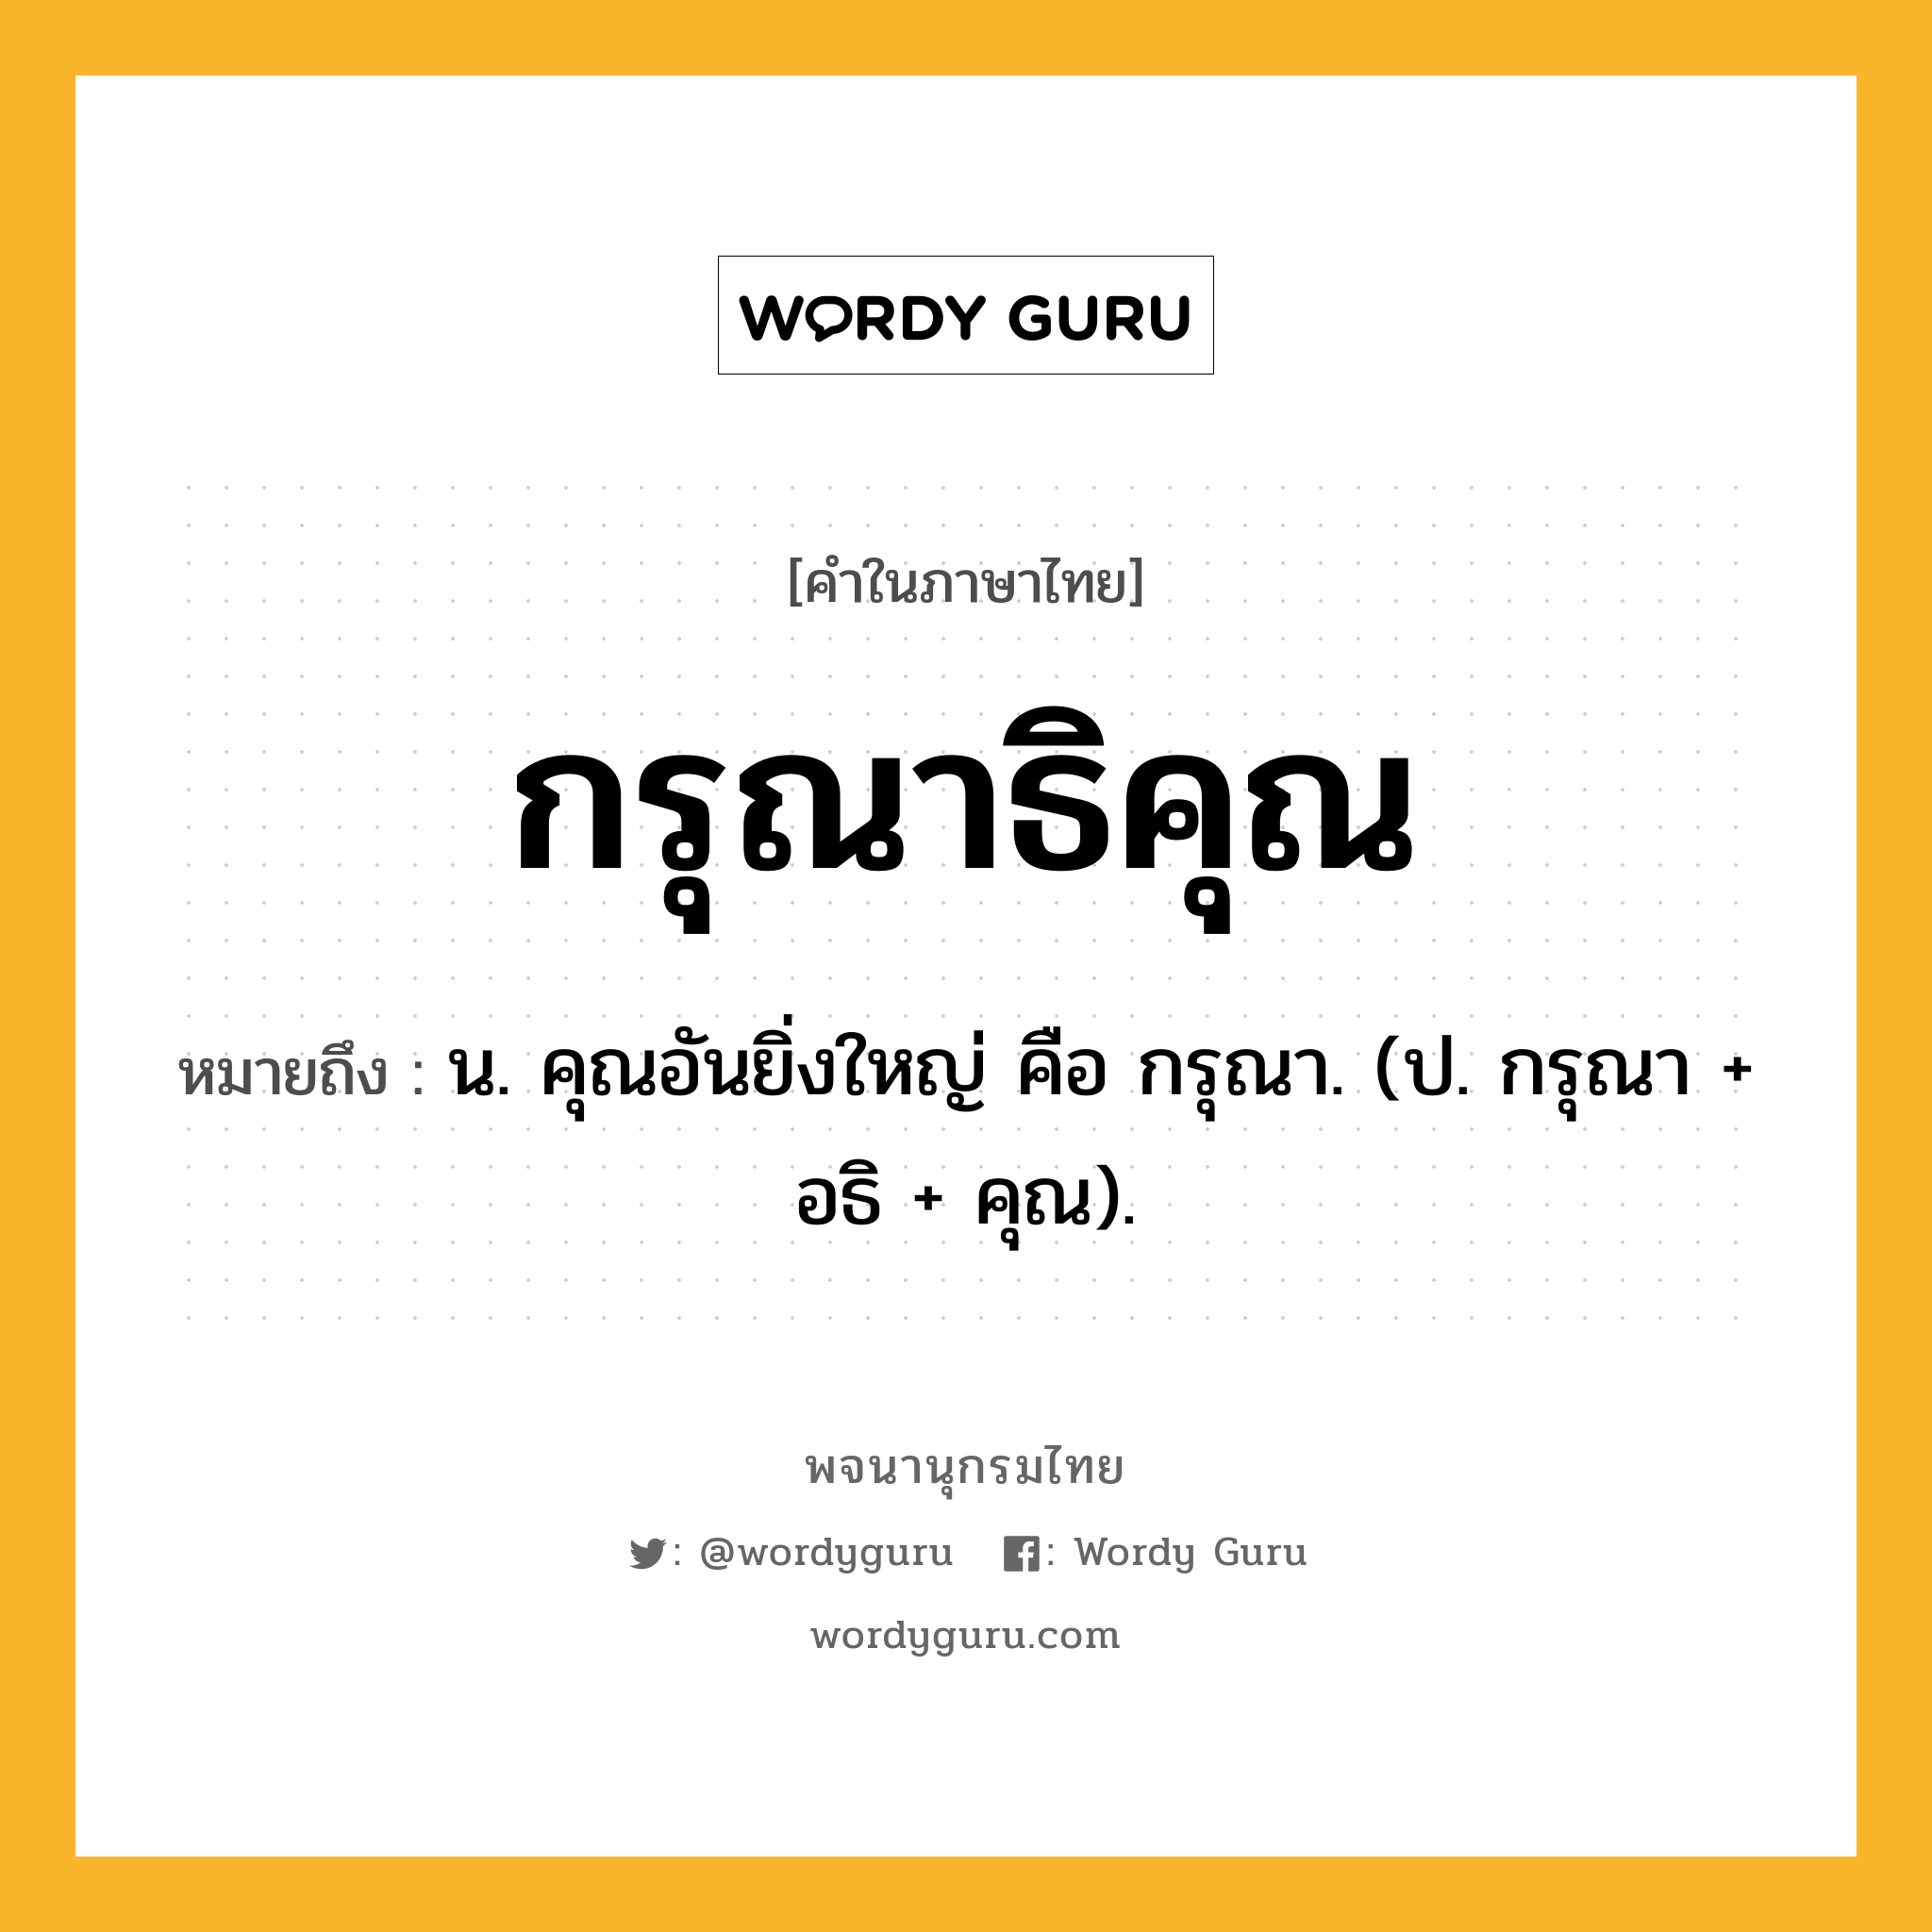 กรุณาธิคุณ หมายถึงอะไร?, คำในภาษาไทย กรุณาธิคุณ หมายถึง น. คุณอันยิ่งใหญ่ คือ กรุณา. (ป. กรุณา + อธิ + คุณ).